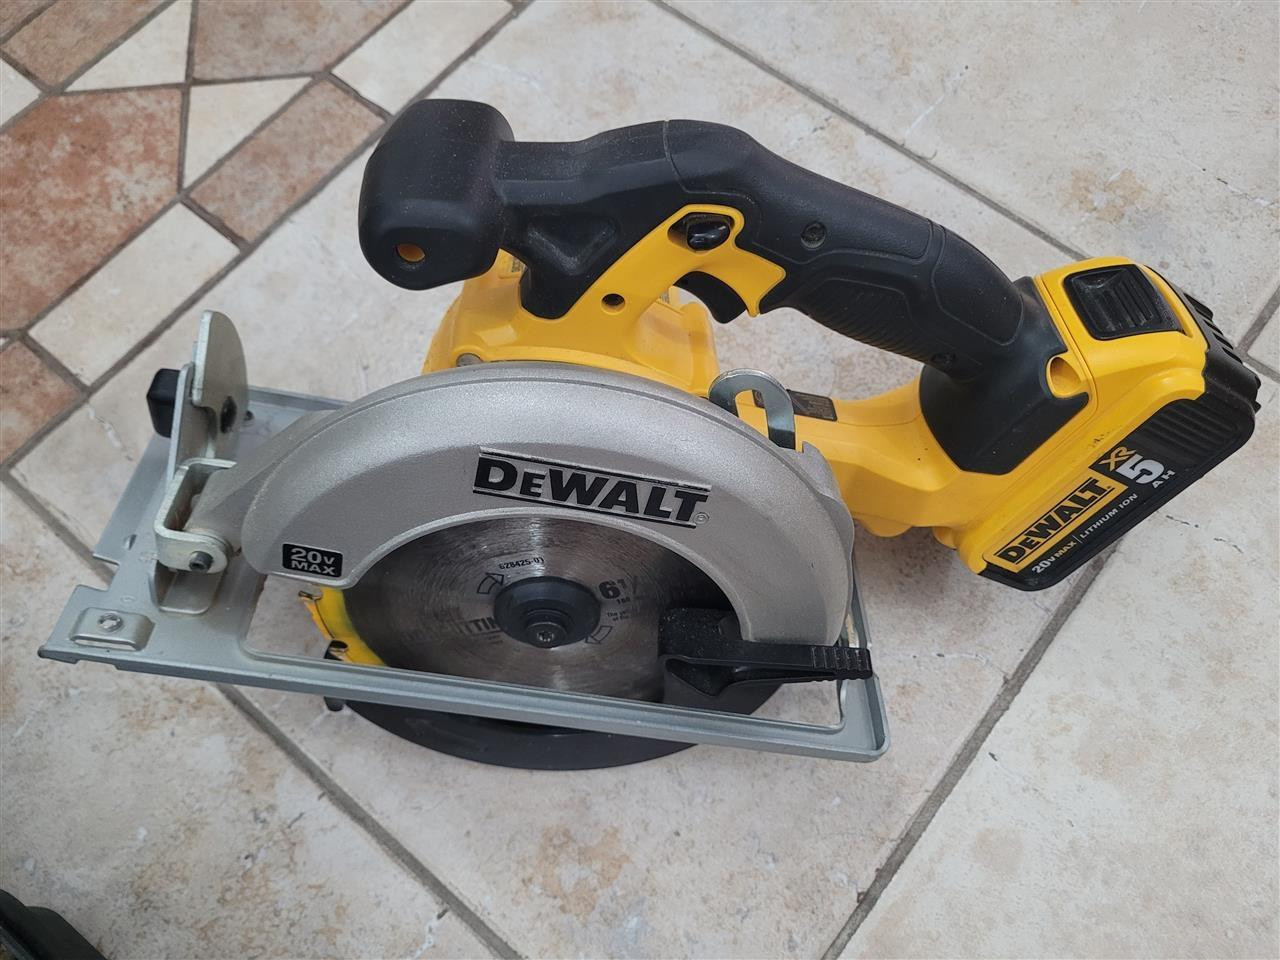 Dewalt 20V Circular Saw and Drill